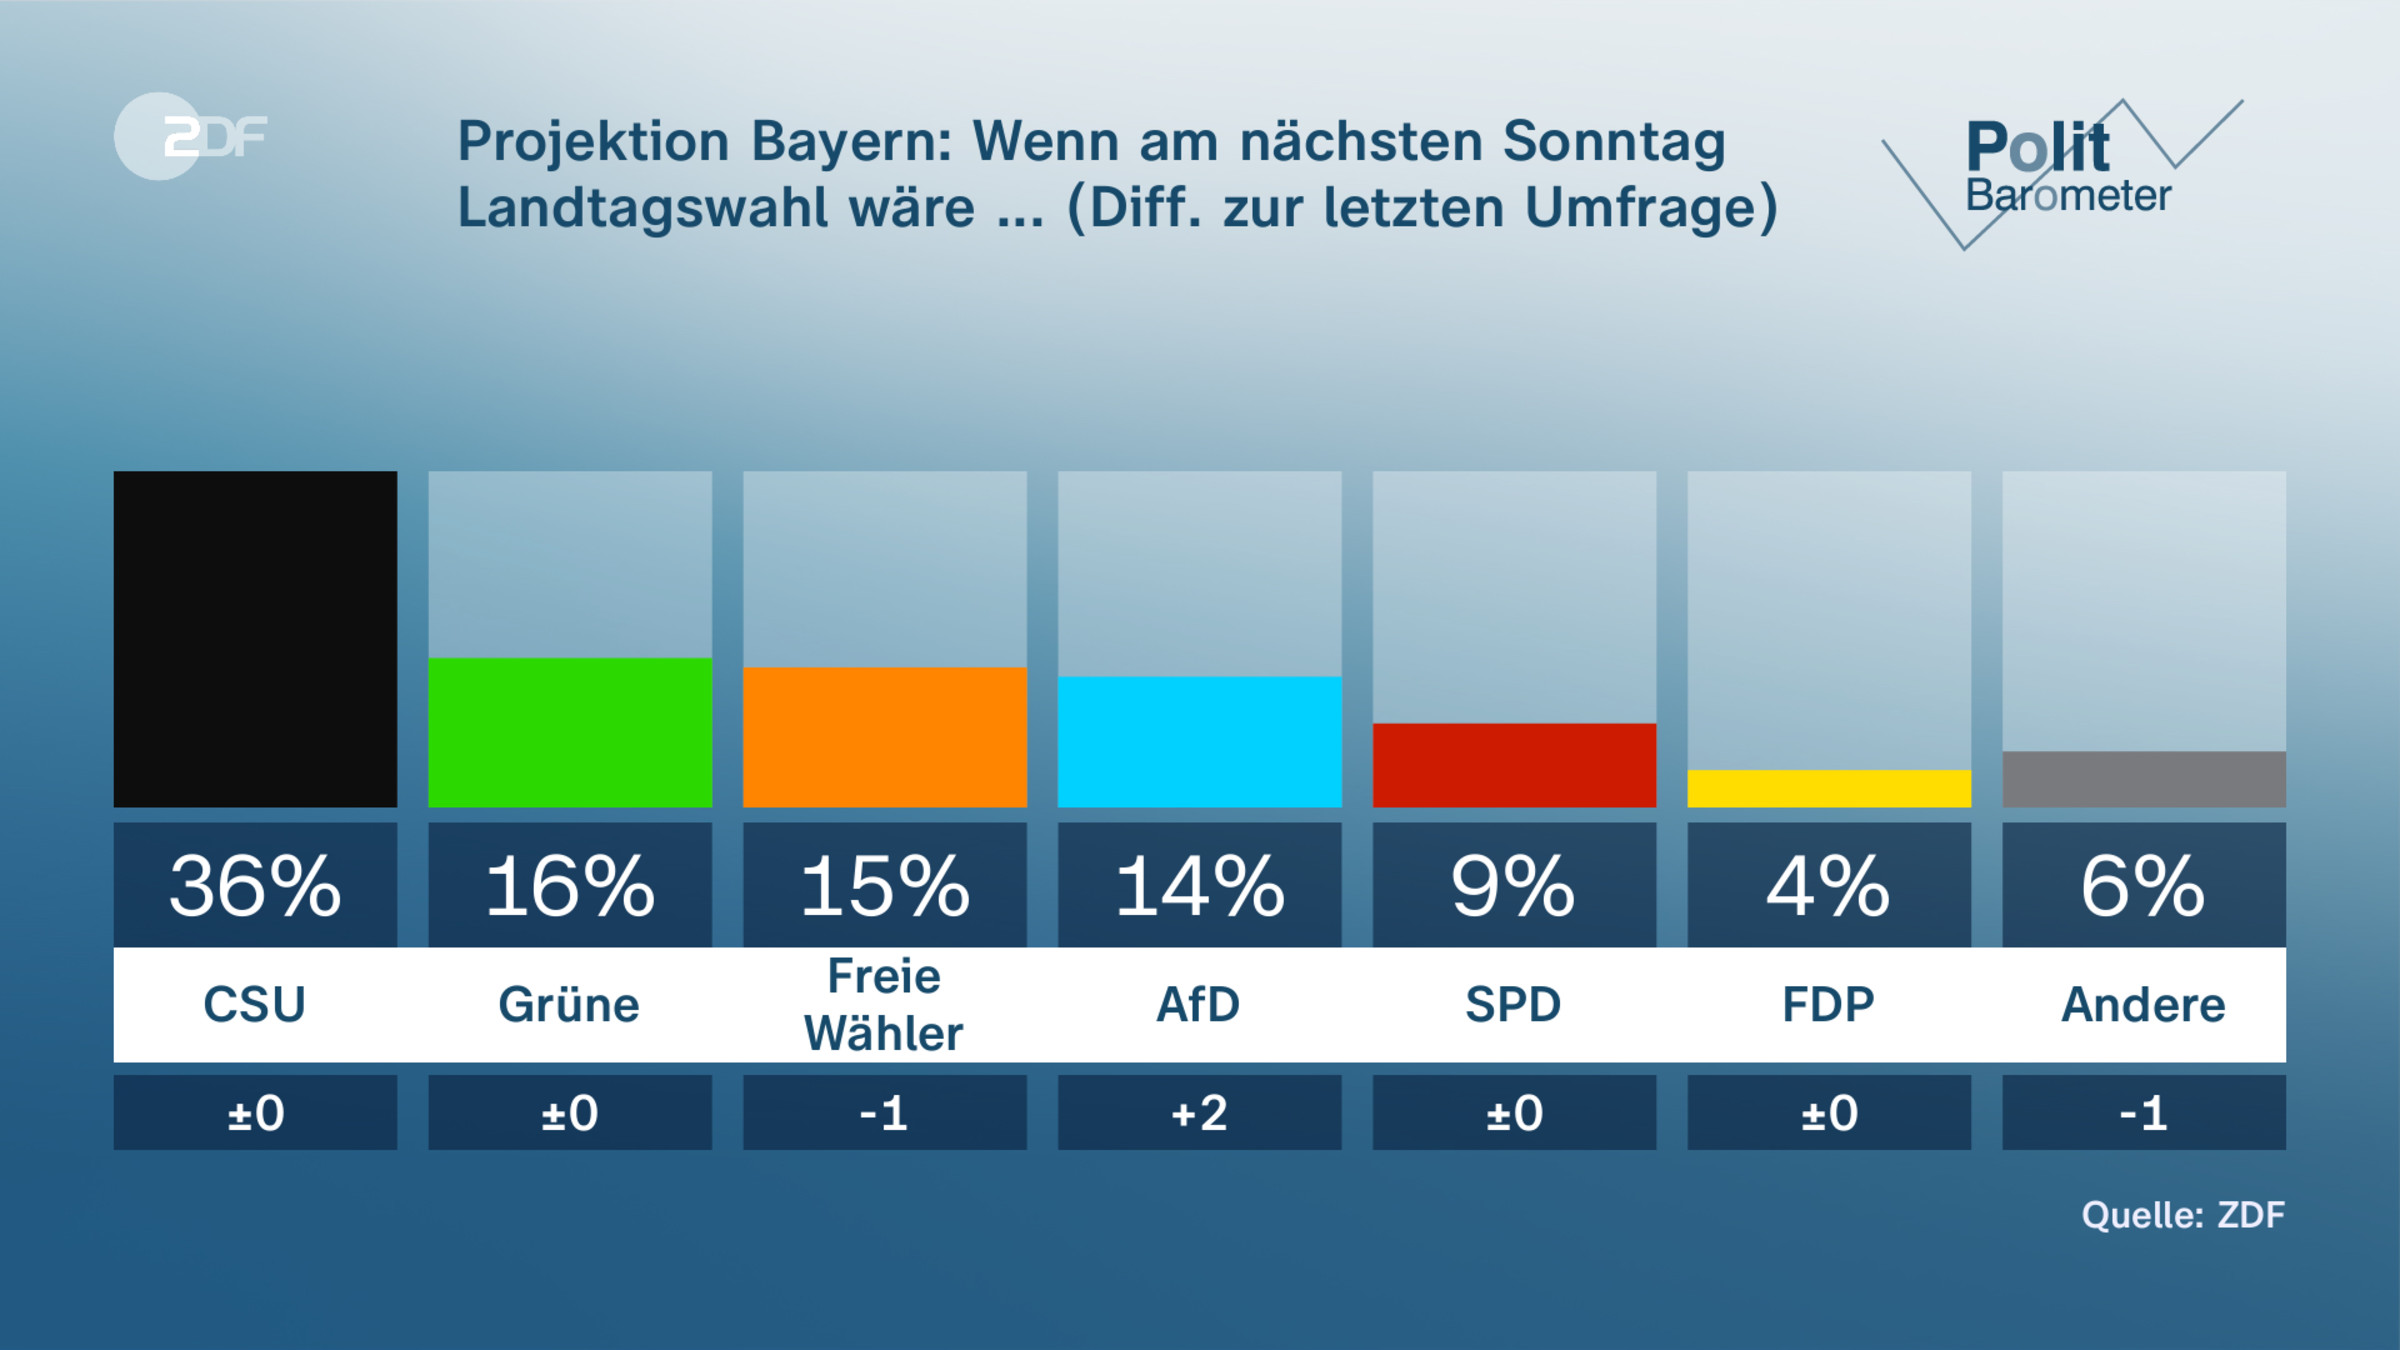 Projektion Bayern: Wenn am nächsten Sonntag Landtagswahl wäre ... (Diff. zur letzten Umfrage) 